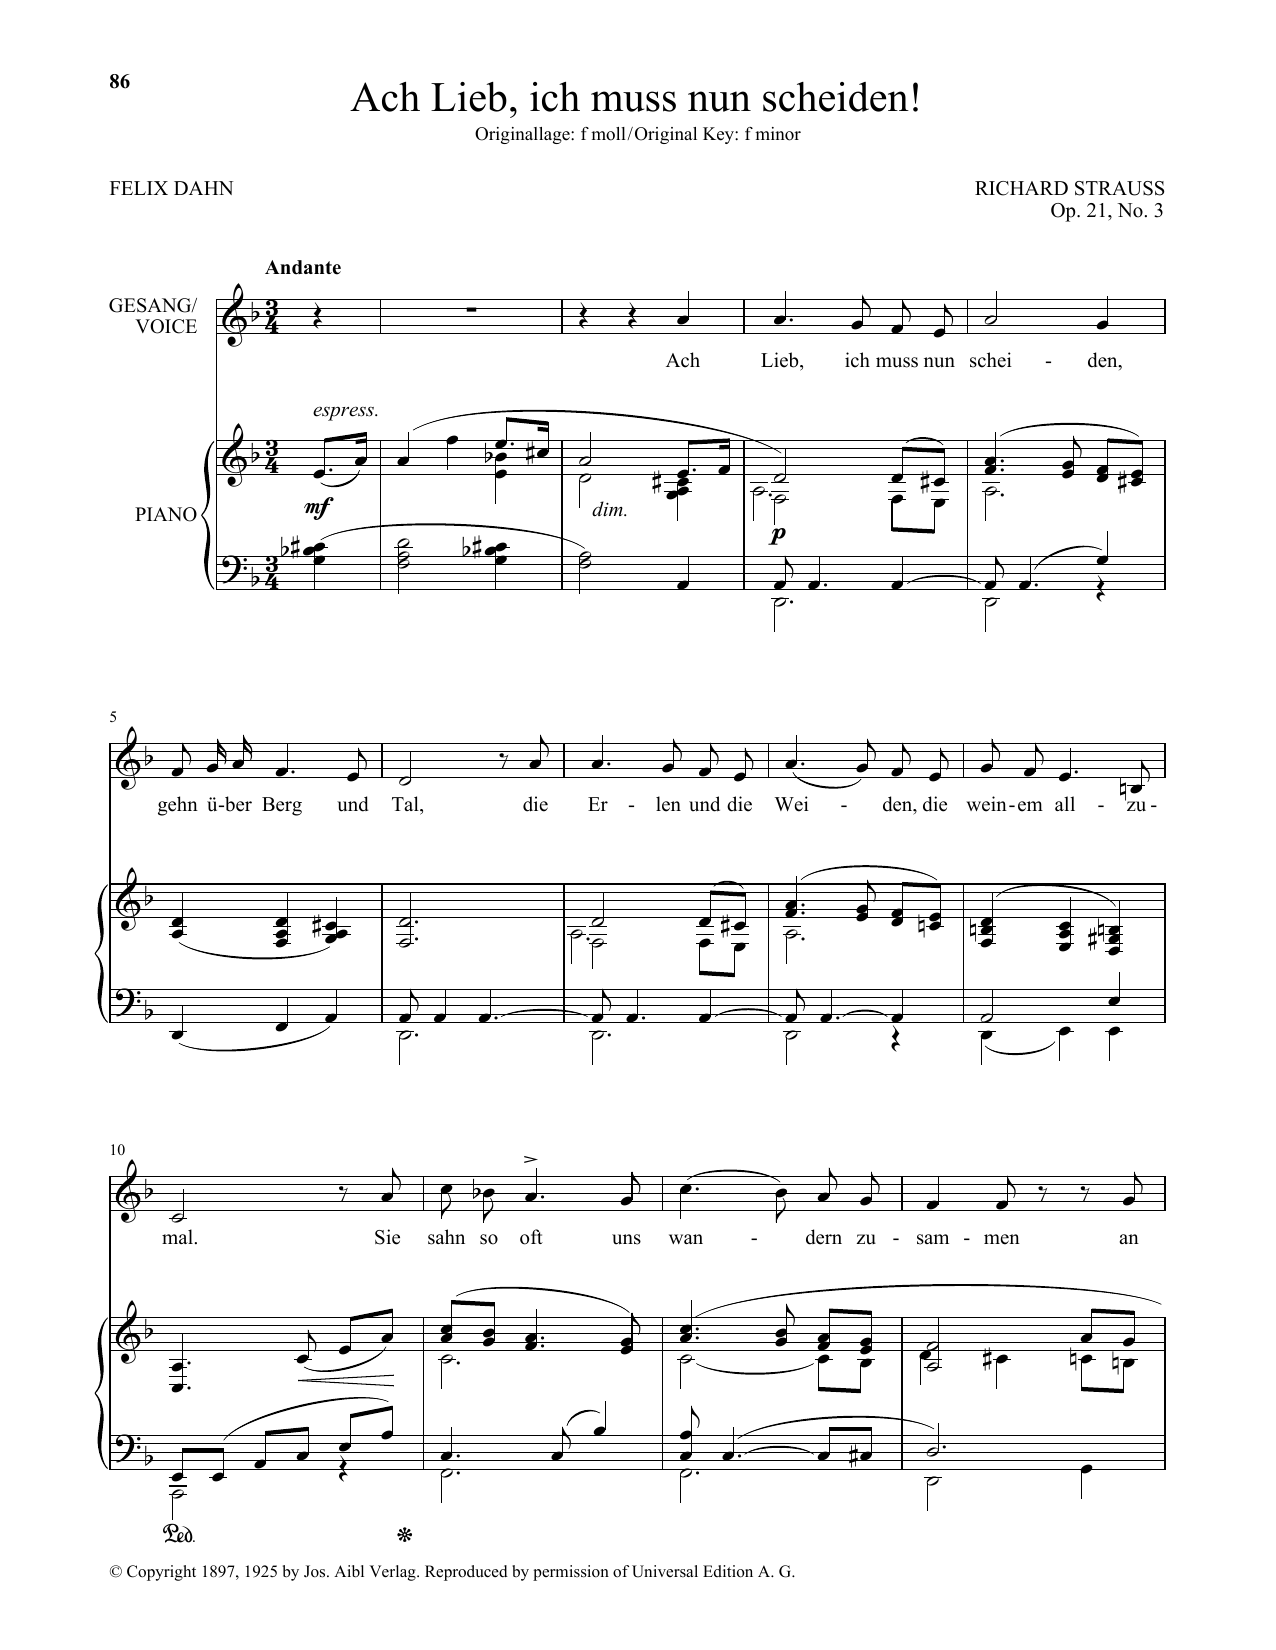 Richard Strauss Ach Lieb, Ich Muss Nun Scheiden! (Low Voice) Sheet Music Notes & Chords for Piano & Vocal - Download or Print PDF